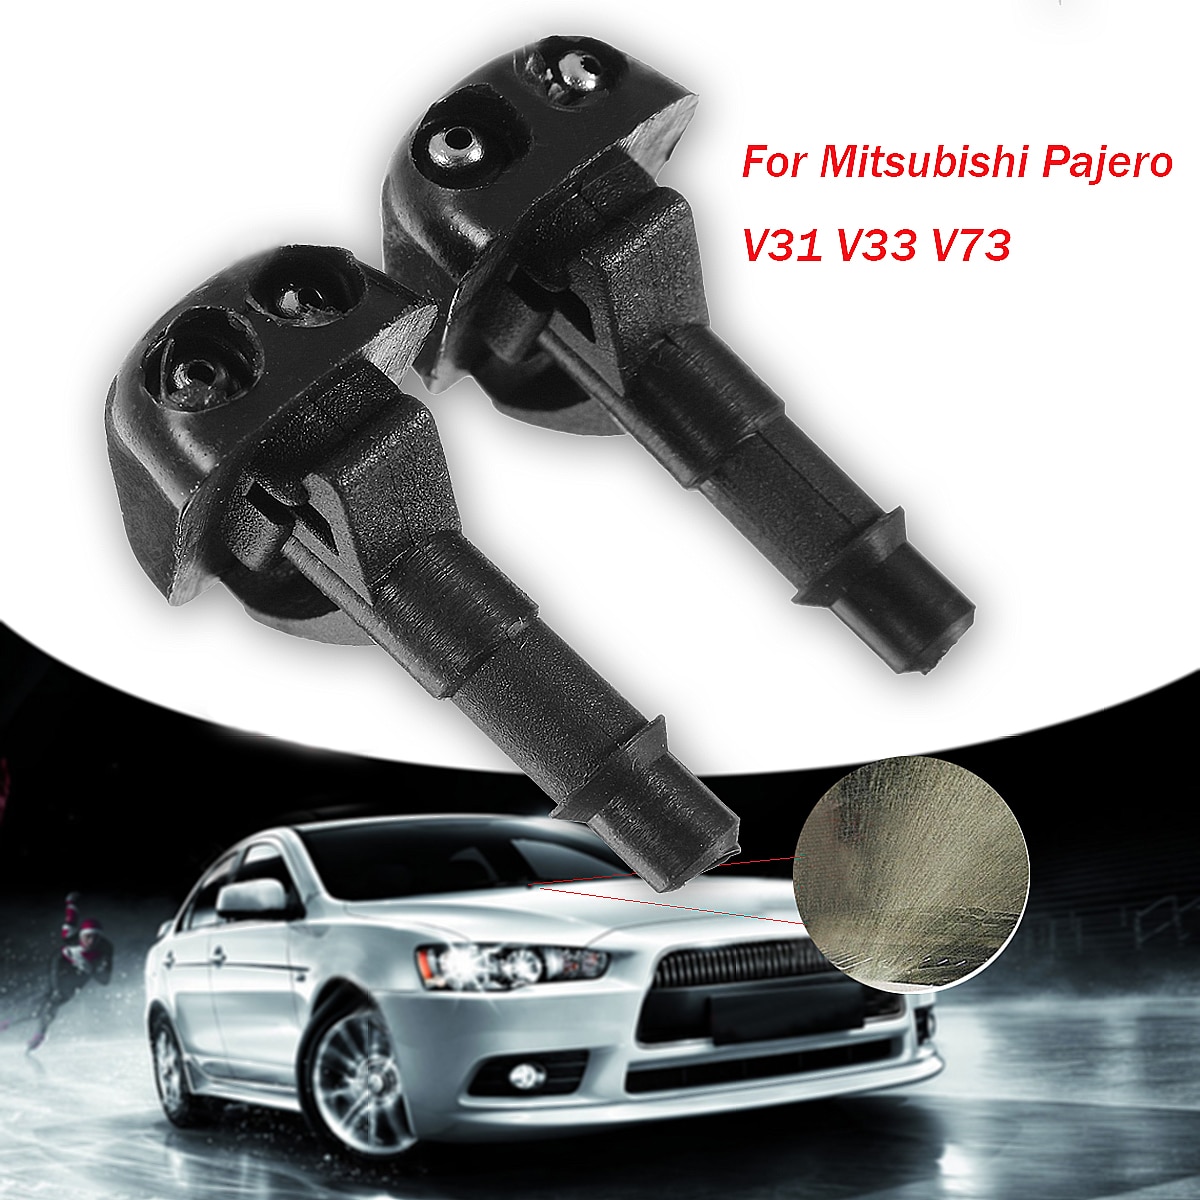 4 Stuks Auto Ruitenwisser Washer Spray Nozzle Voor Mitsubishi Pajero V31 V33 V73